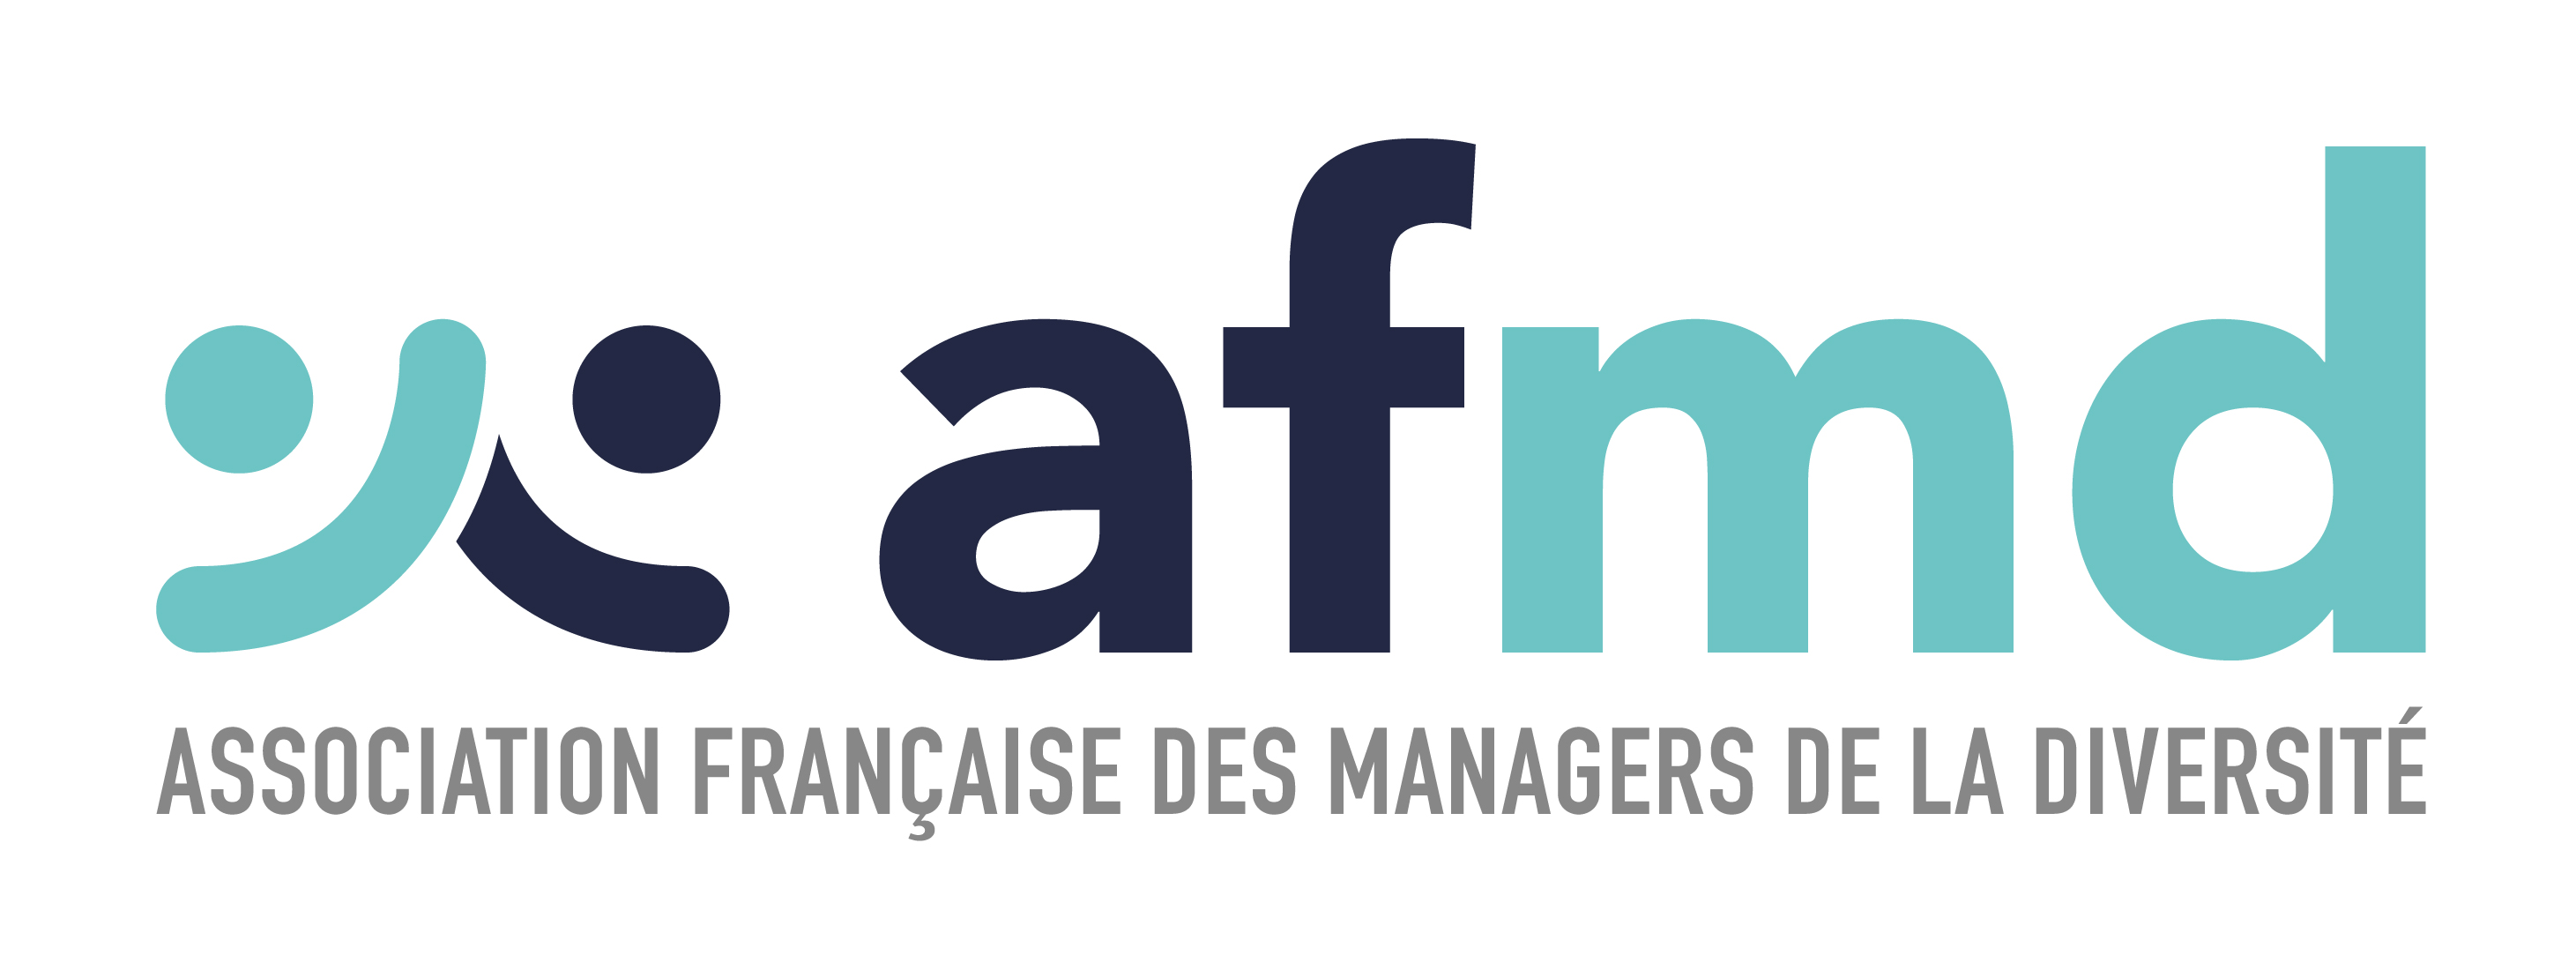 Association française des managers de la diversité